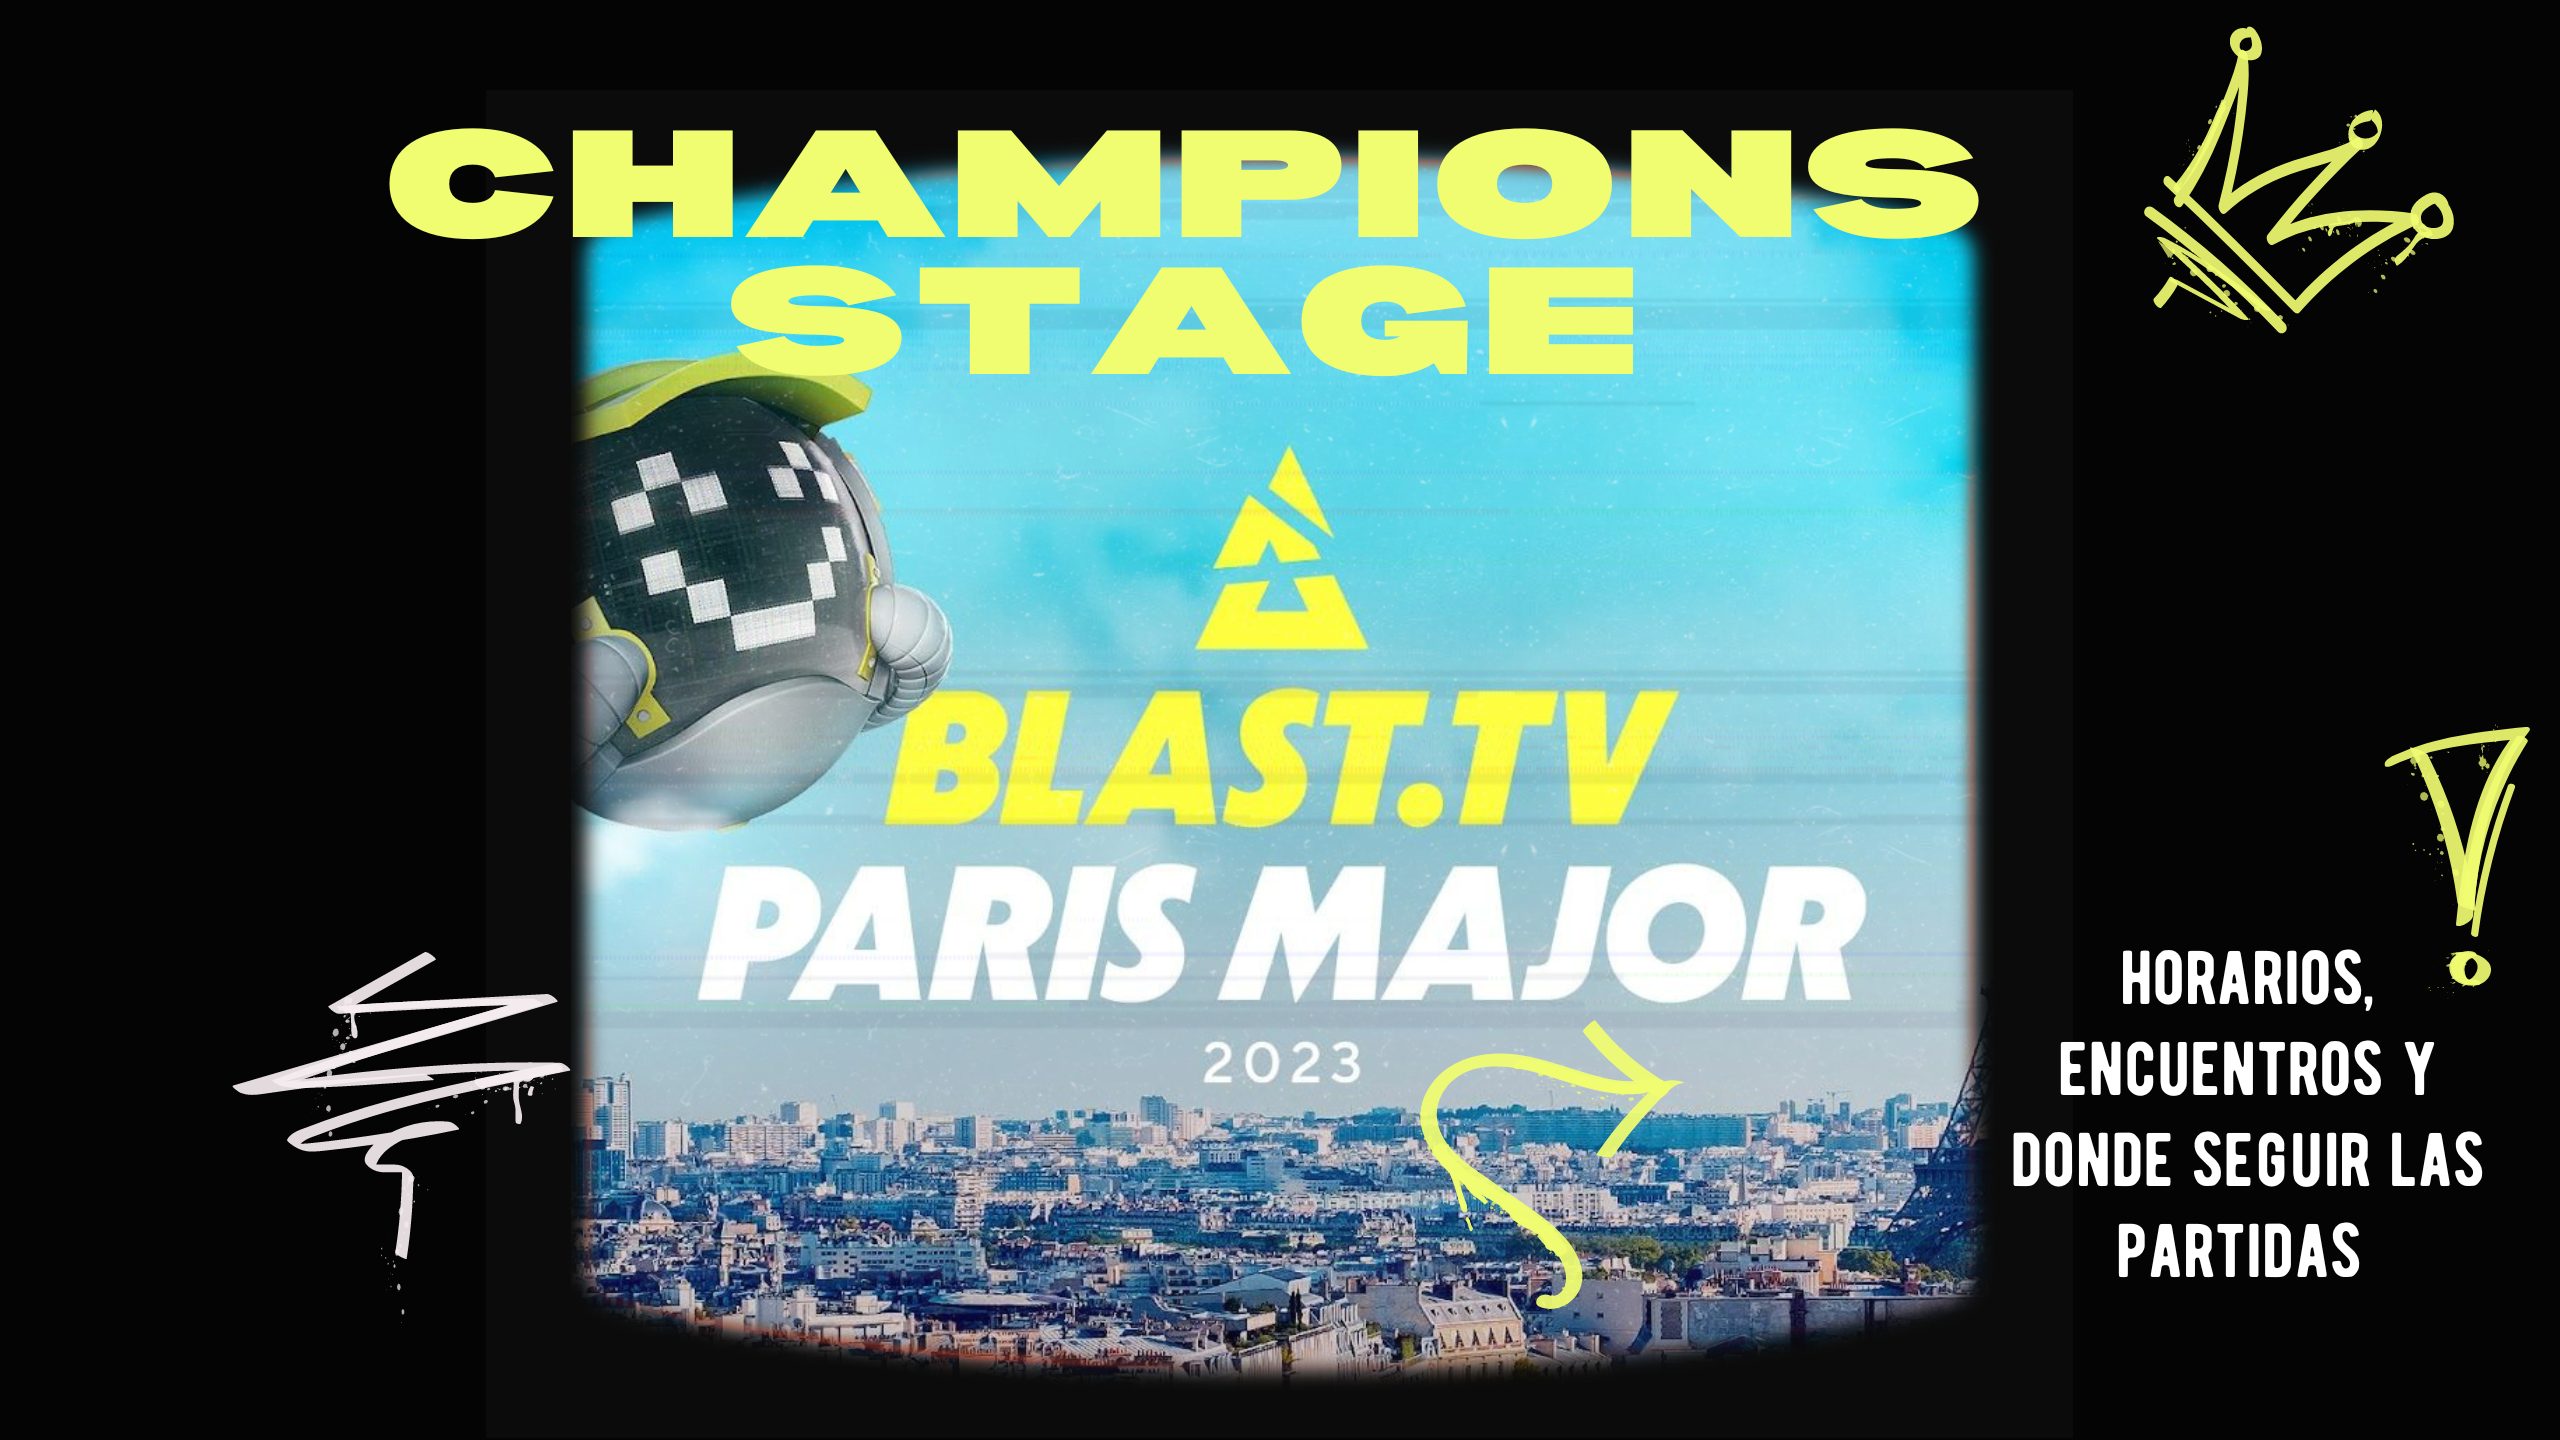 Foto de CSGO: Horarios y dónde seguir las partidas del Champions Stage de la BLAST.tv Paris Major 2023